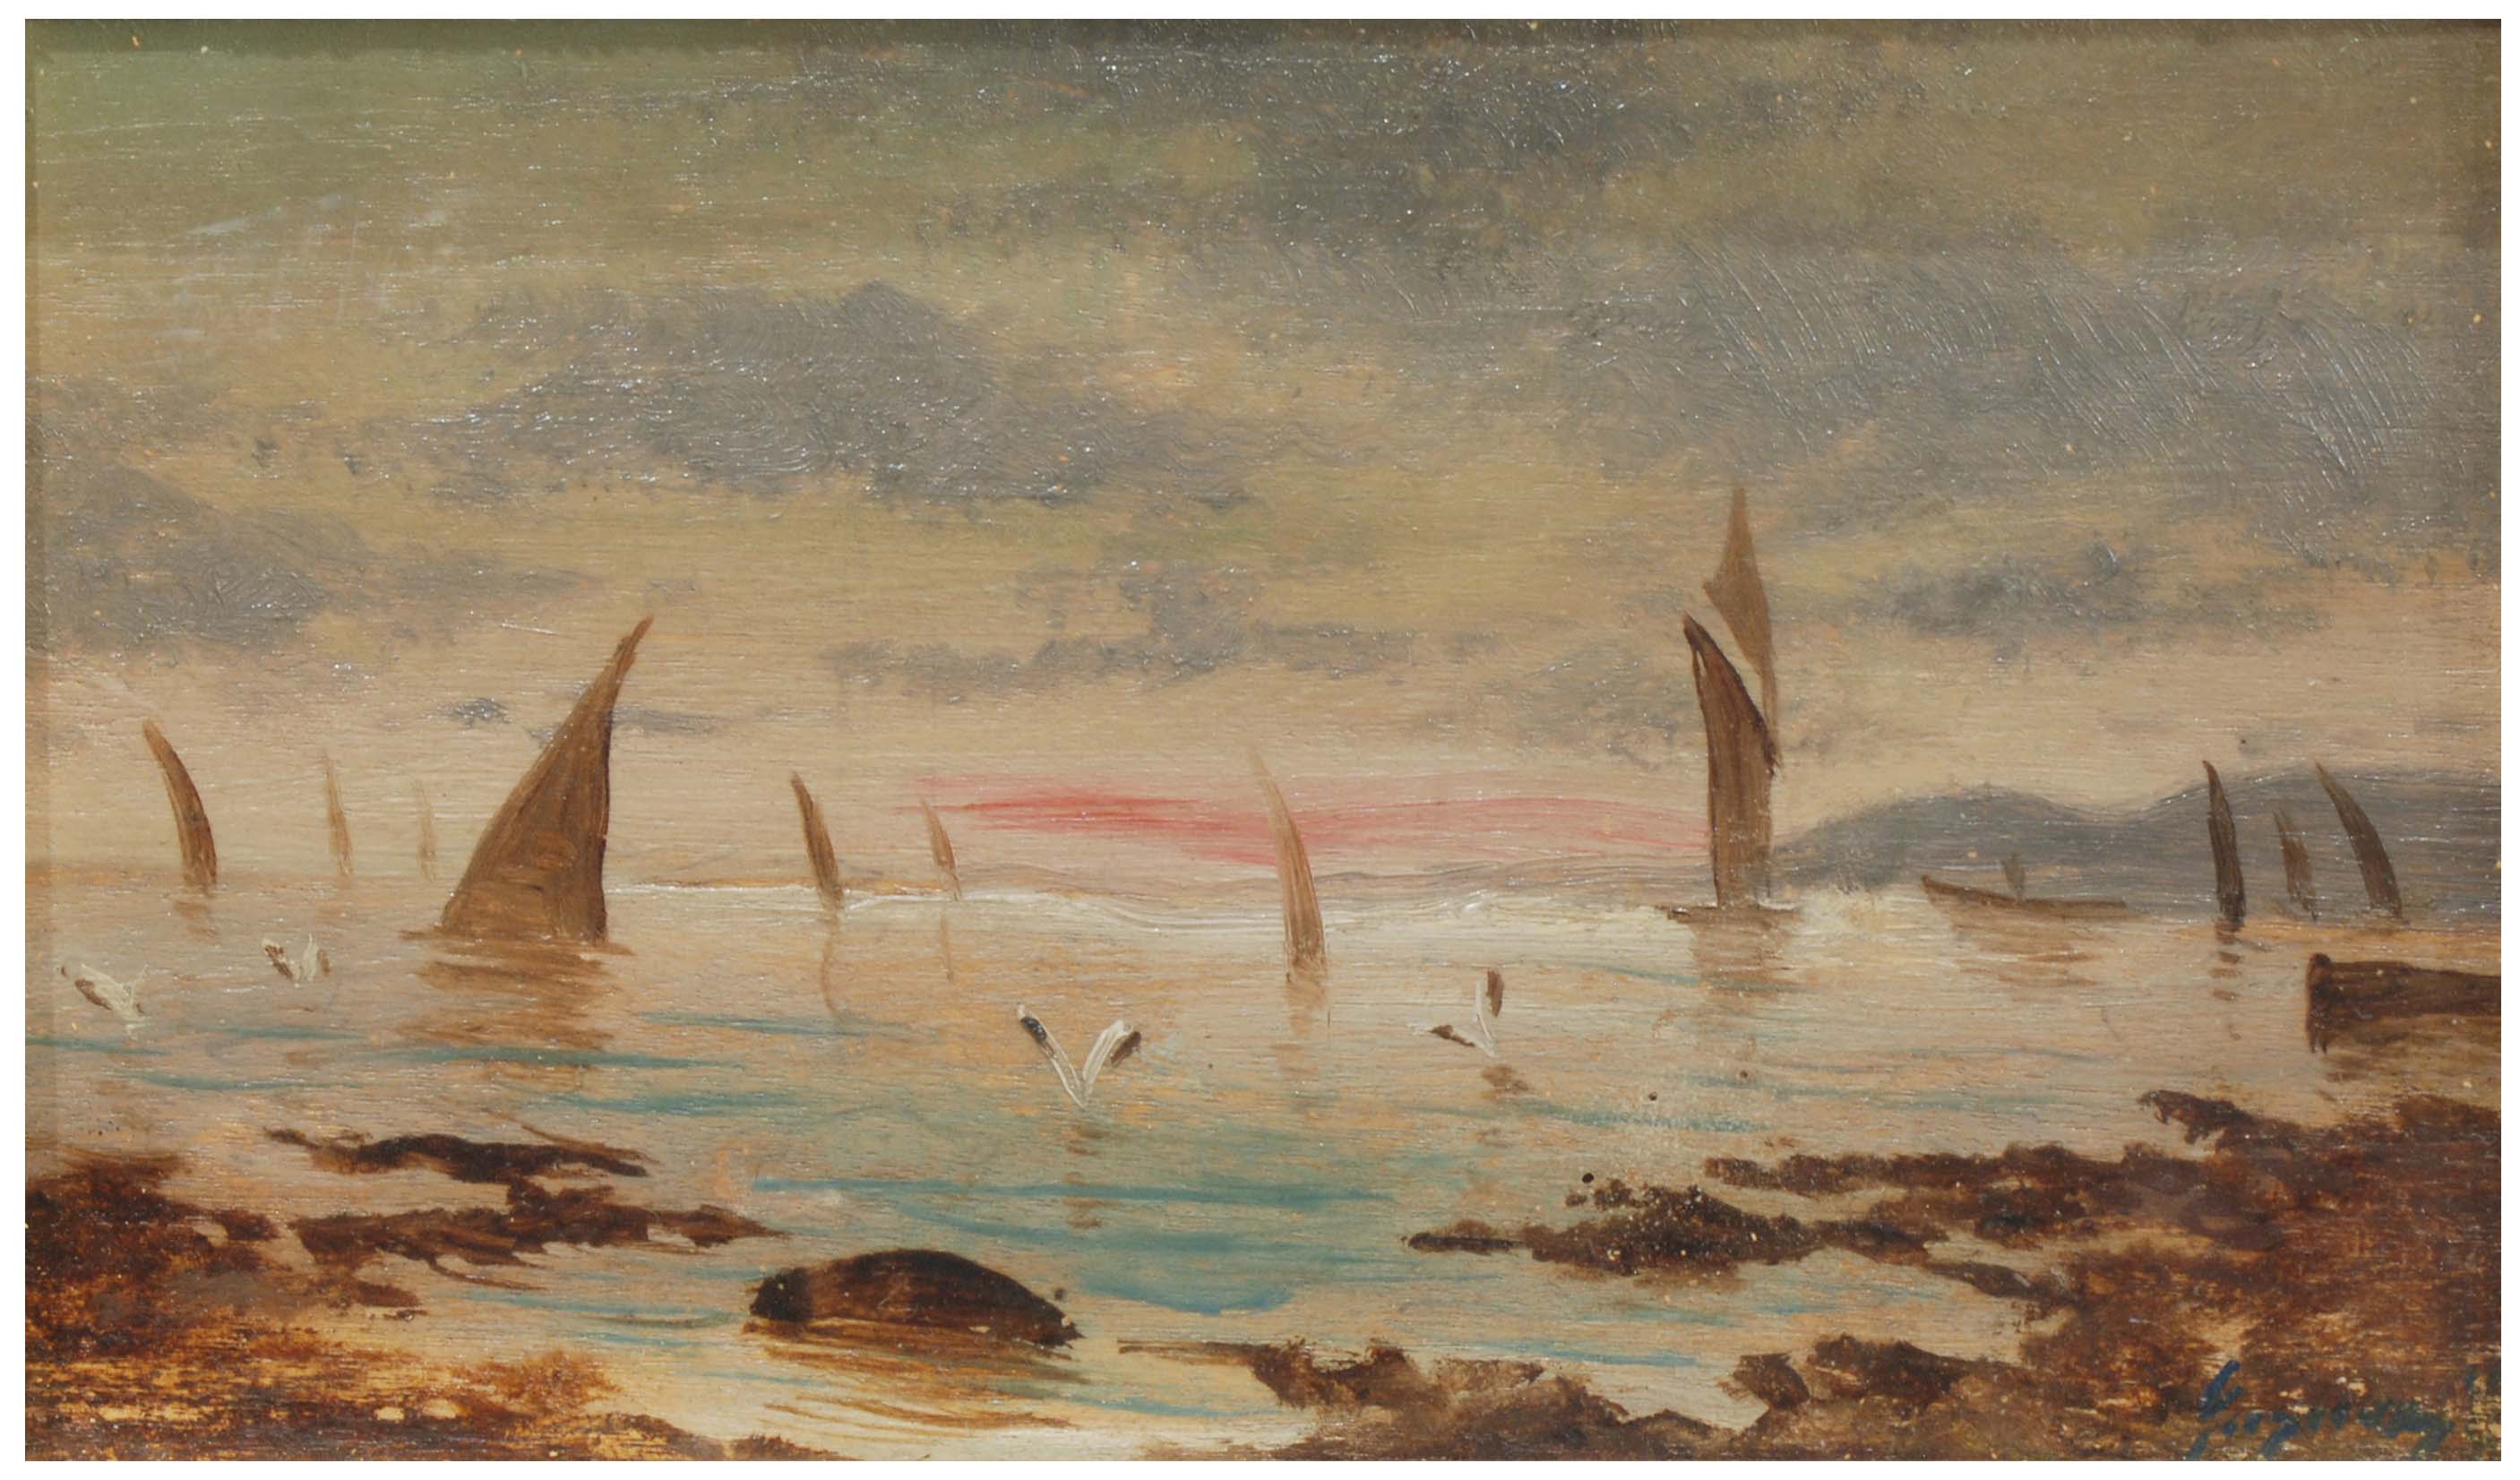 ENRIC GALWEY (1864-1931) "Marina".